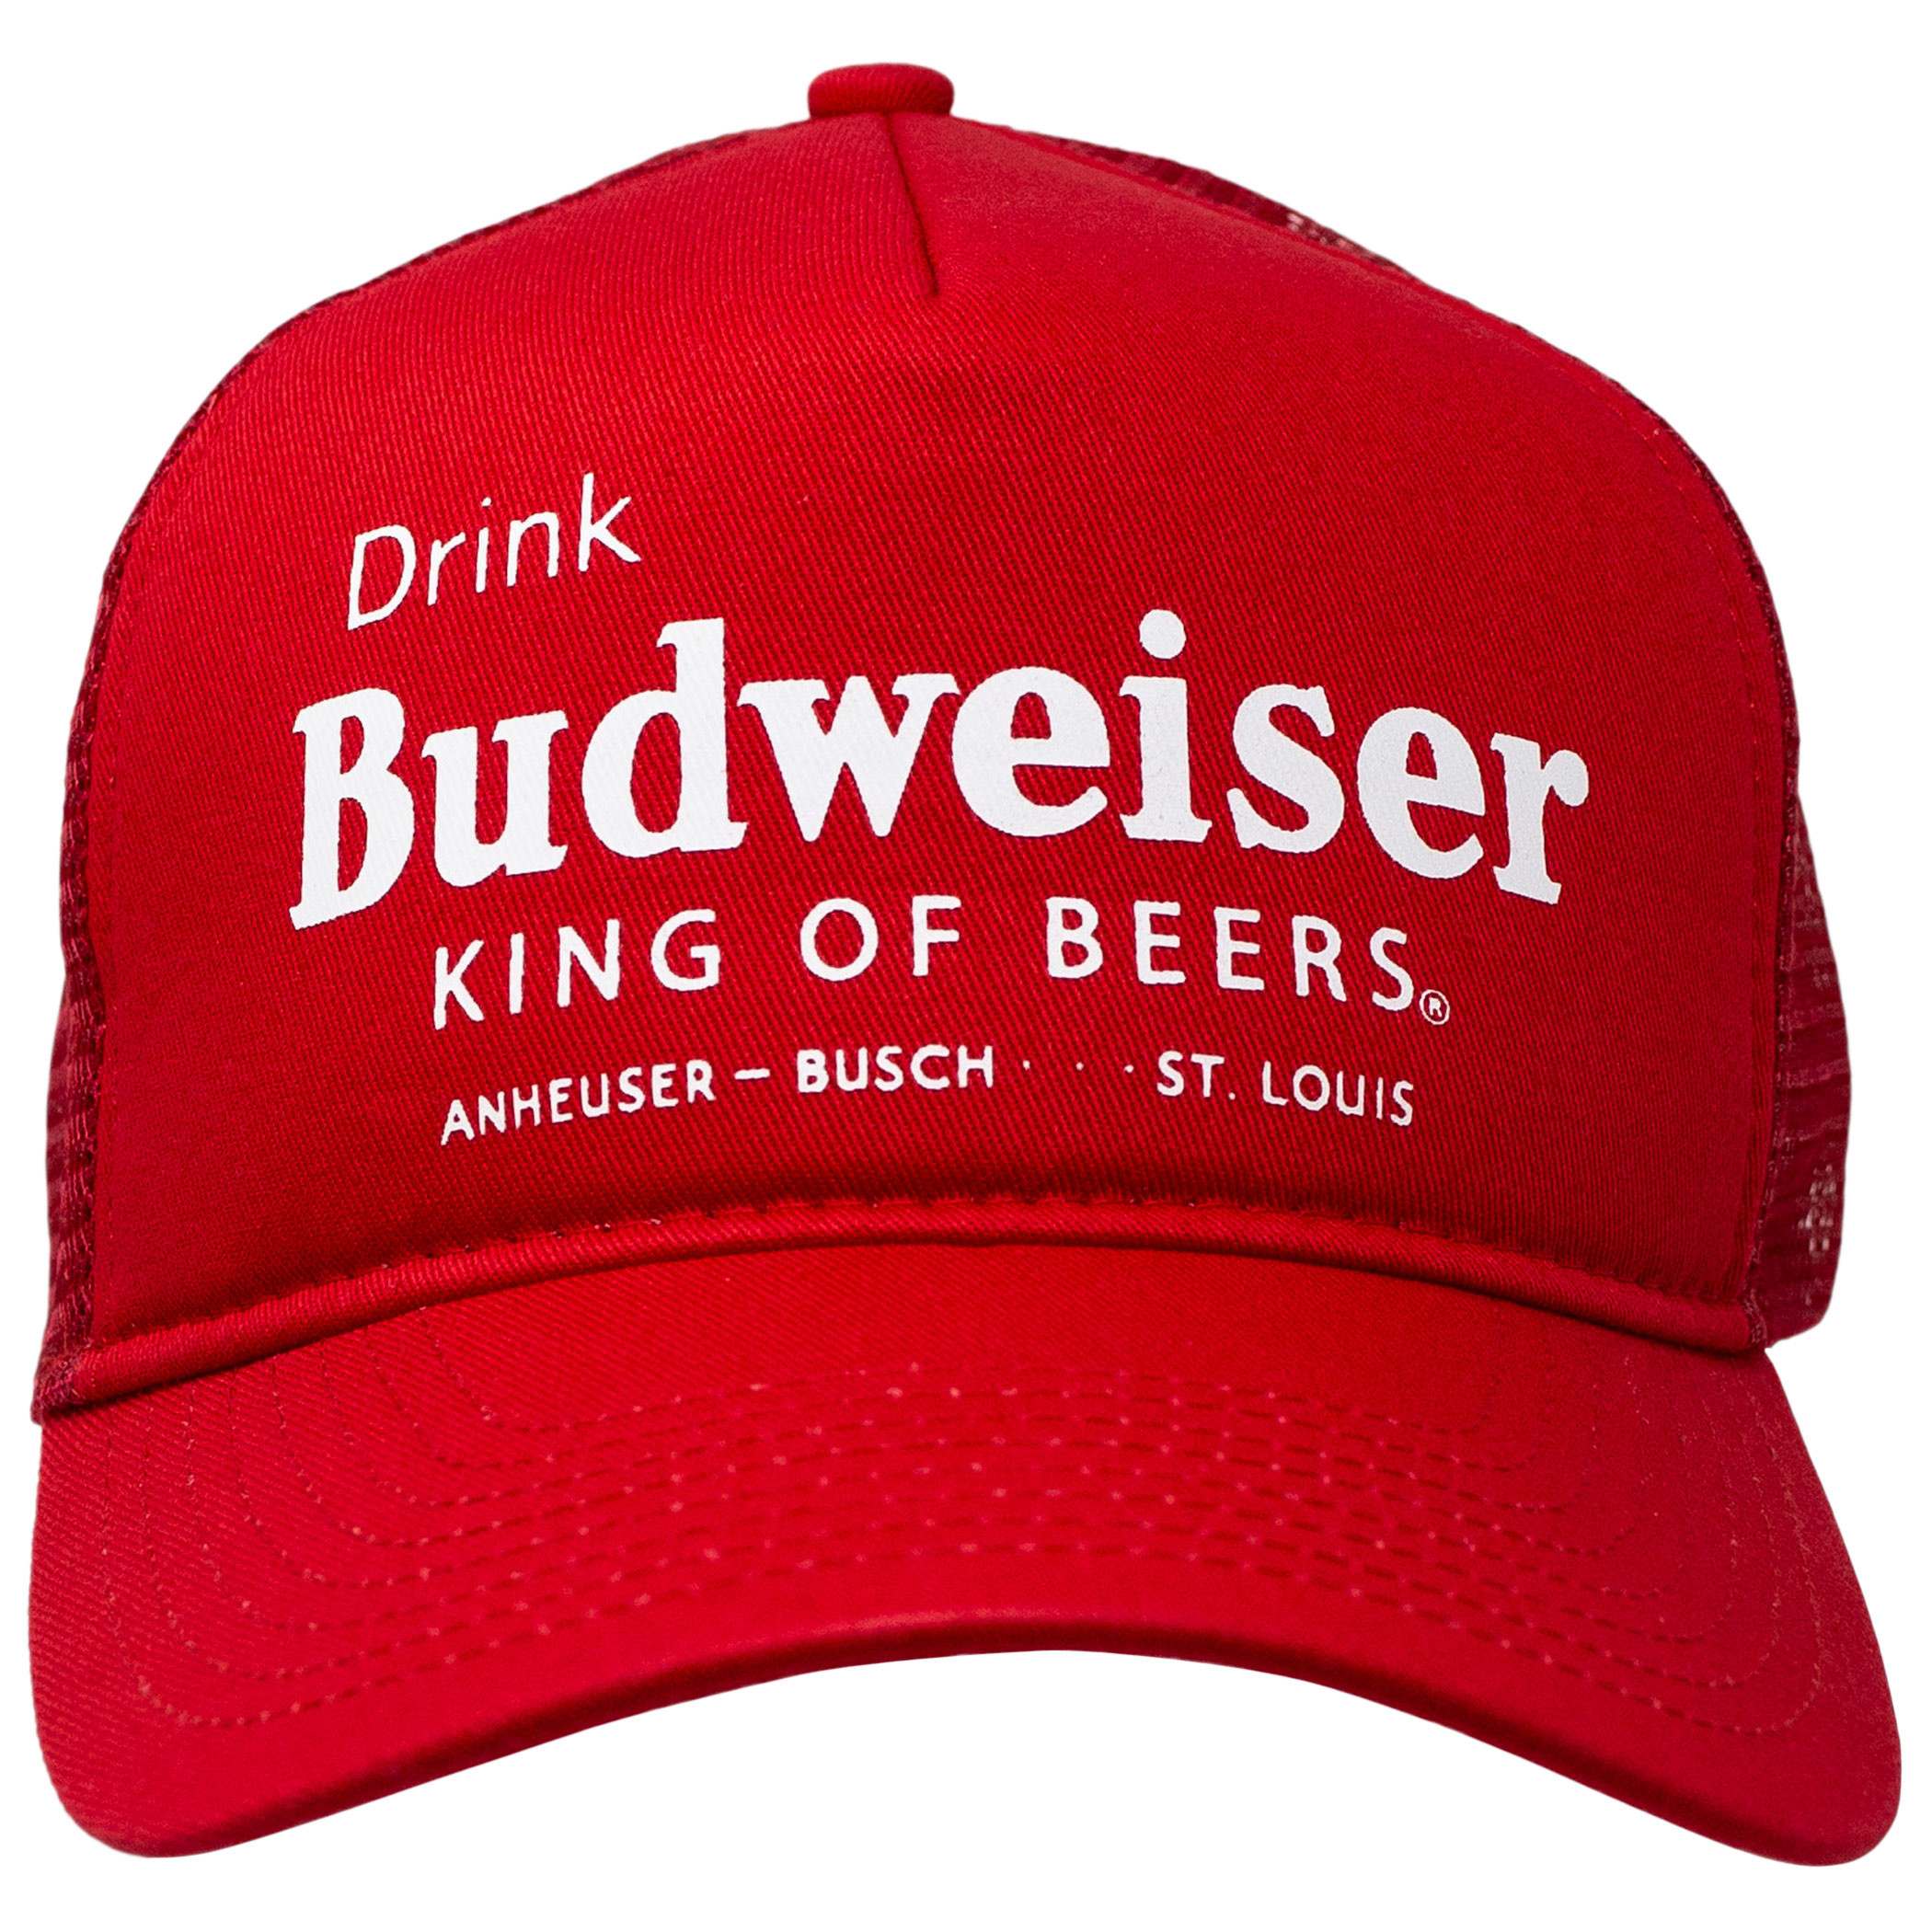 Budweiser King Of Beers Trucker Hat